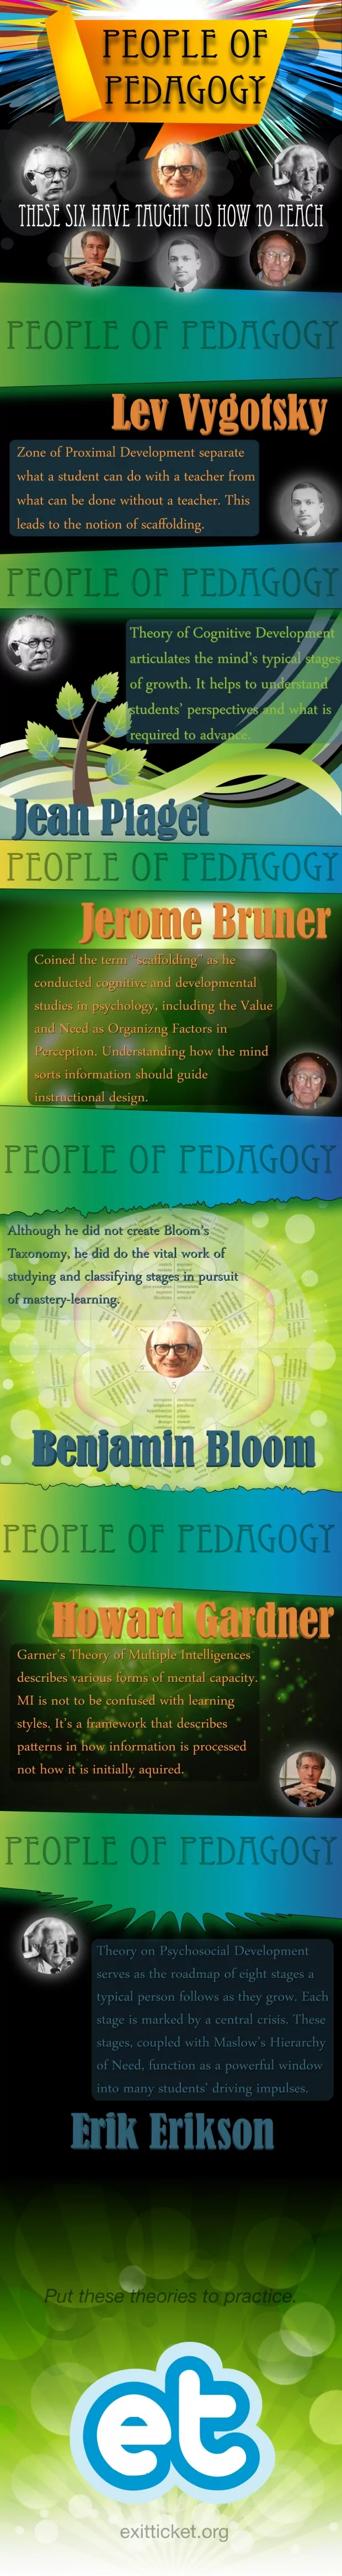 people of pedagogy